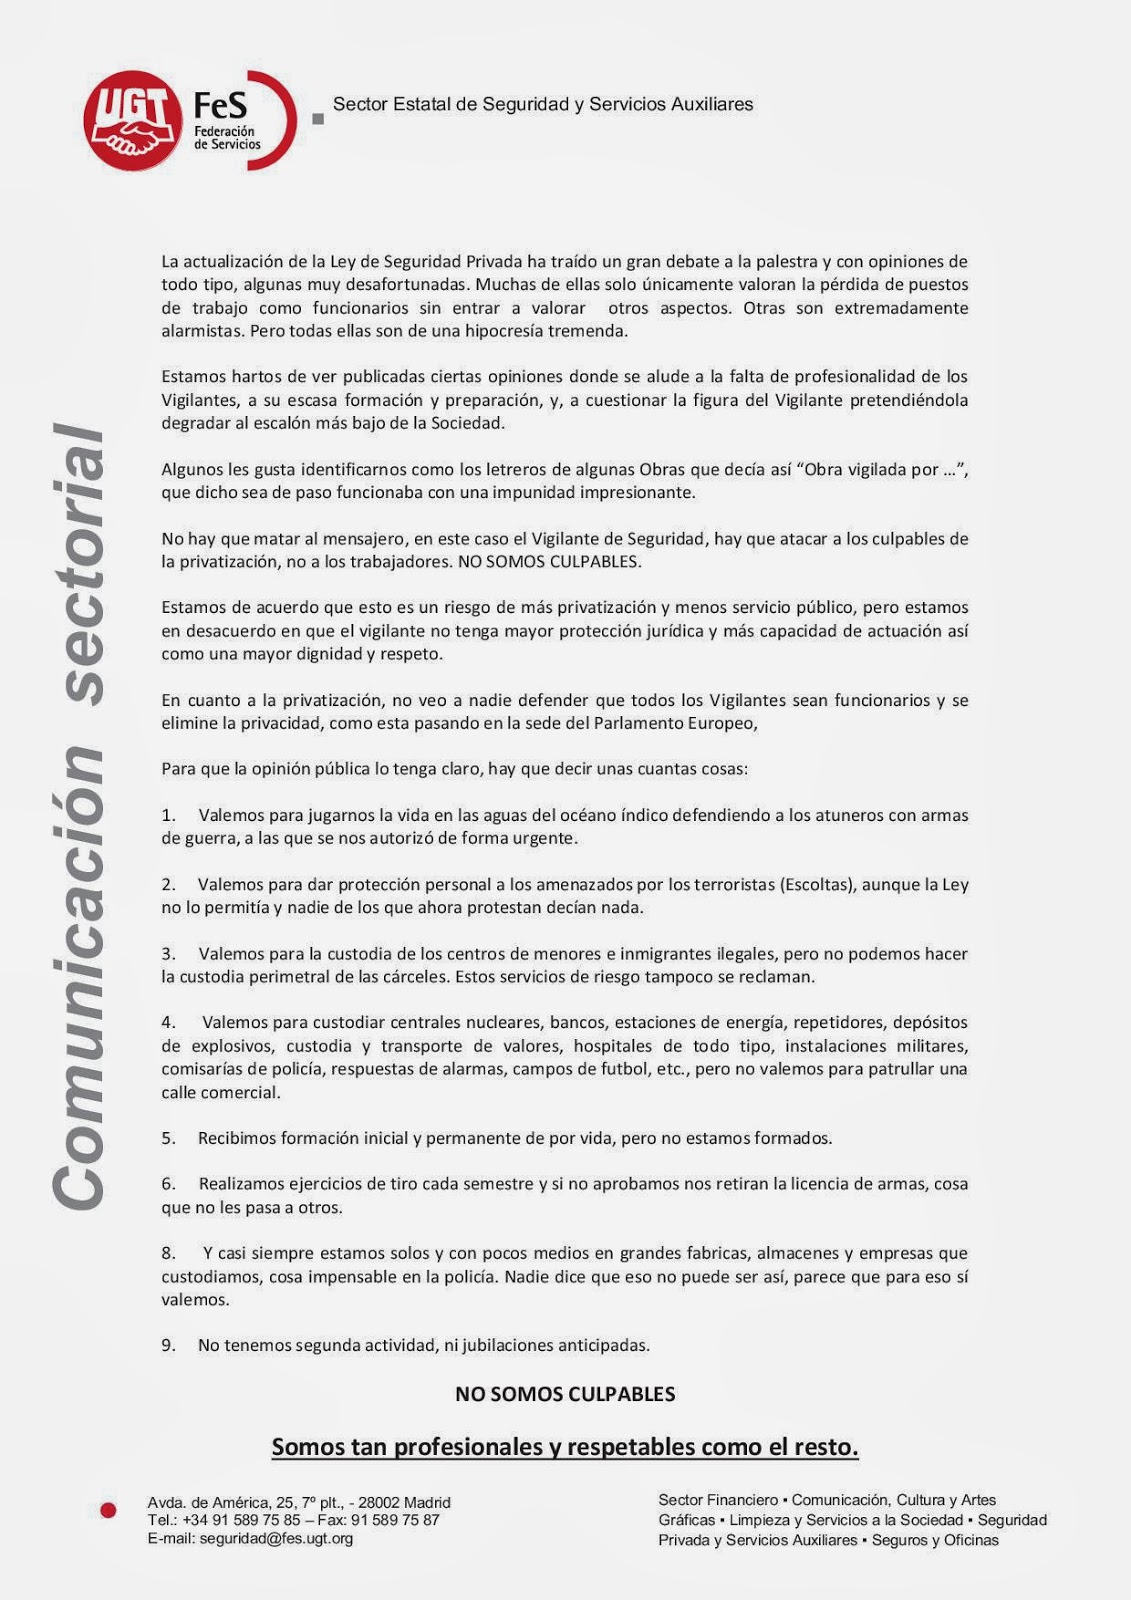 http://www.fesugt.es/documentos/pdf/seguridad/noticias/20131212_reflexion.pdf